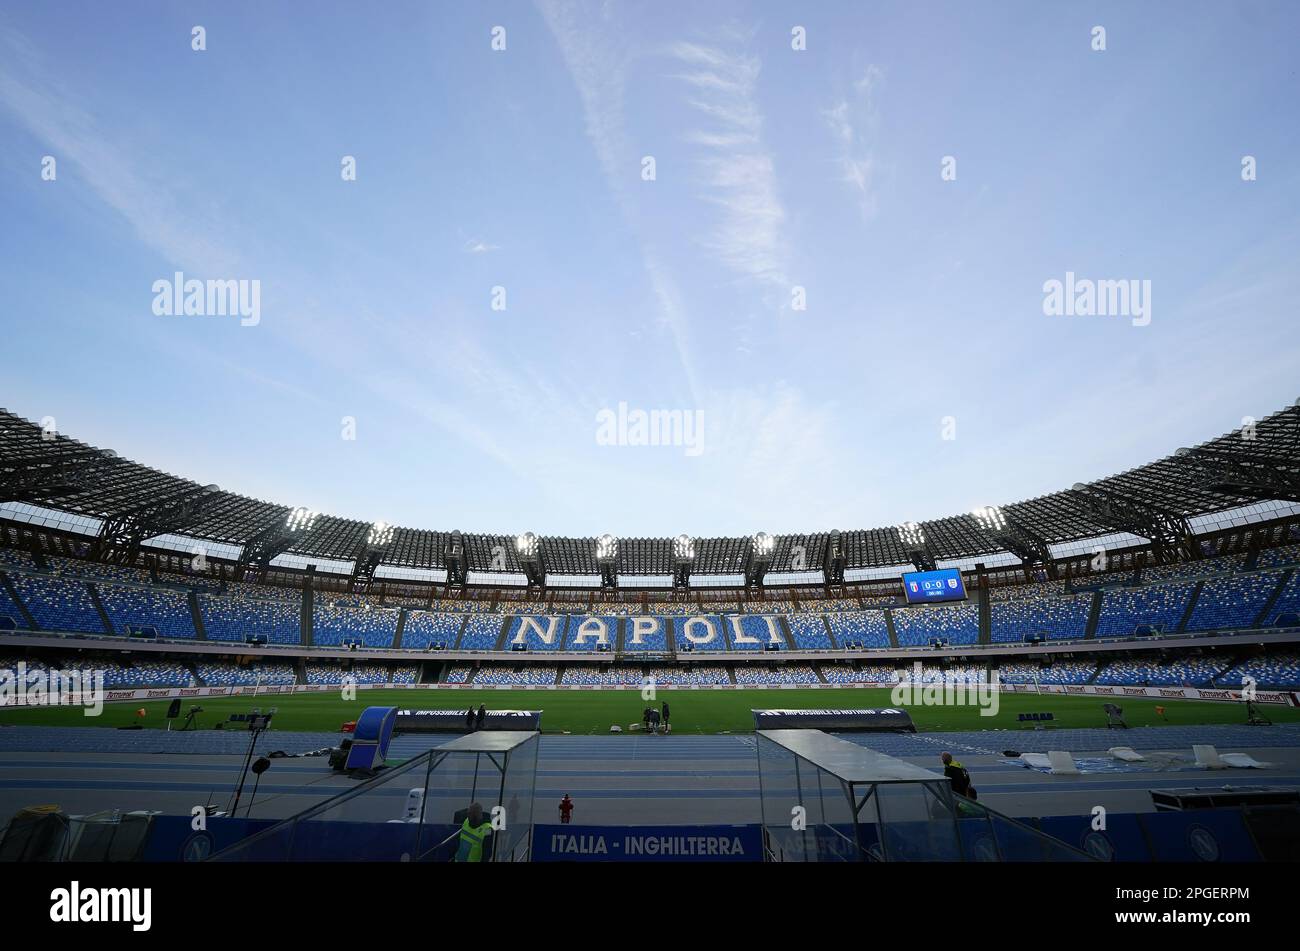 Vista generale dello stadio Diego Armando Maradona, Napoli, Italia. Data immagine: Mercoledì 22 marzo 2023. Foto Stock